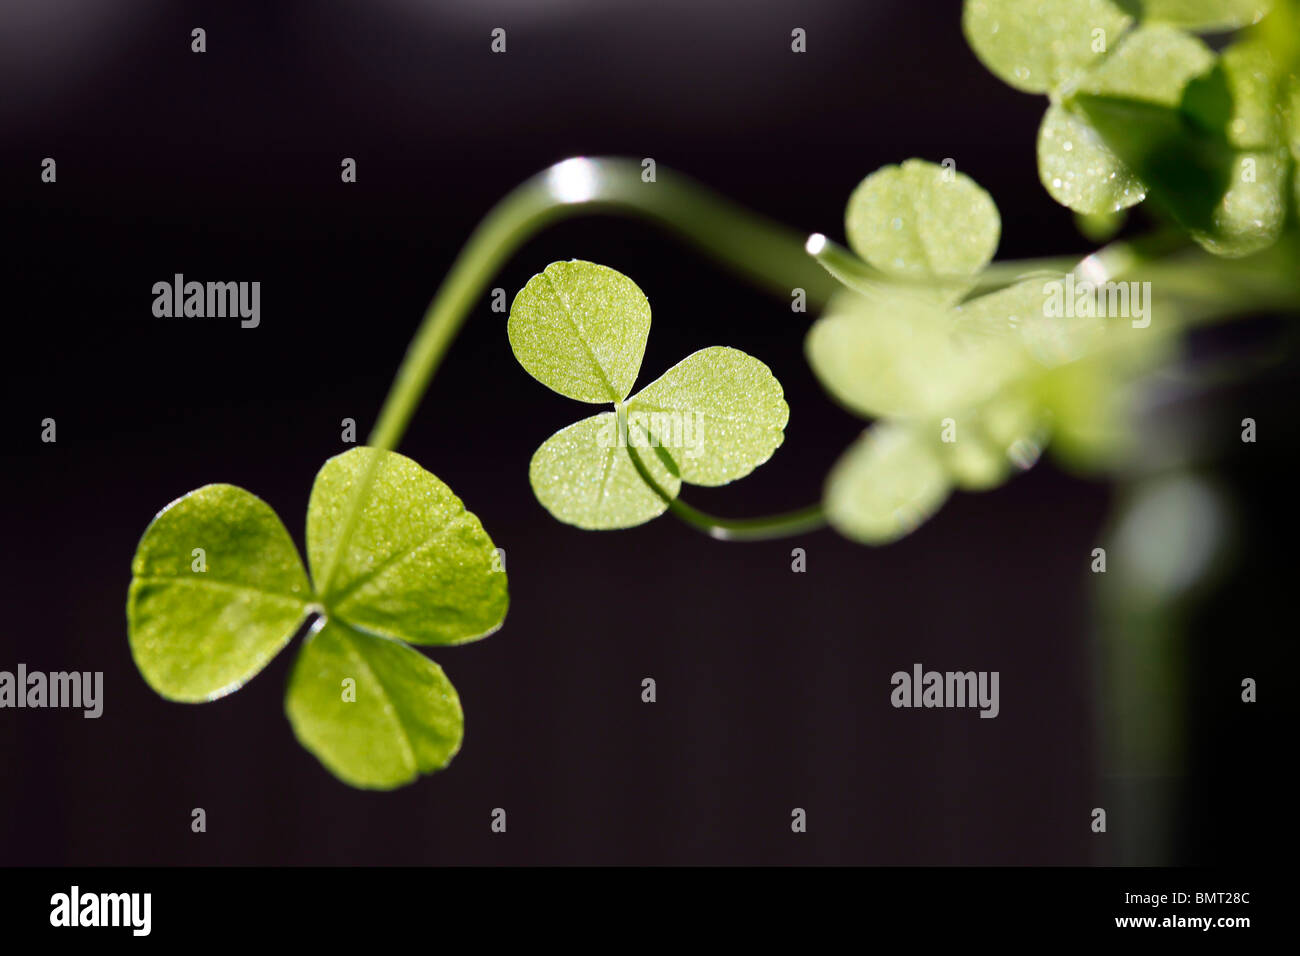 clover, plants. Stock Photo